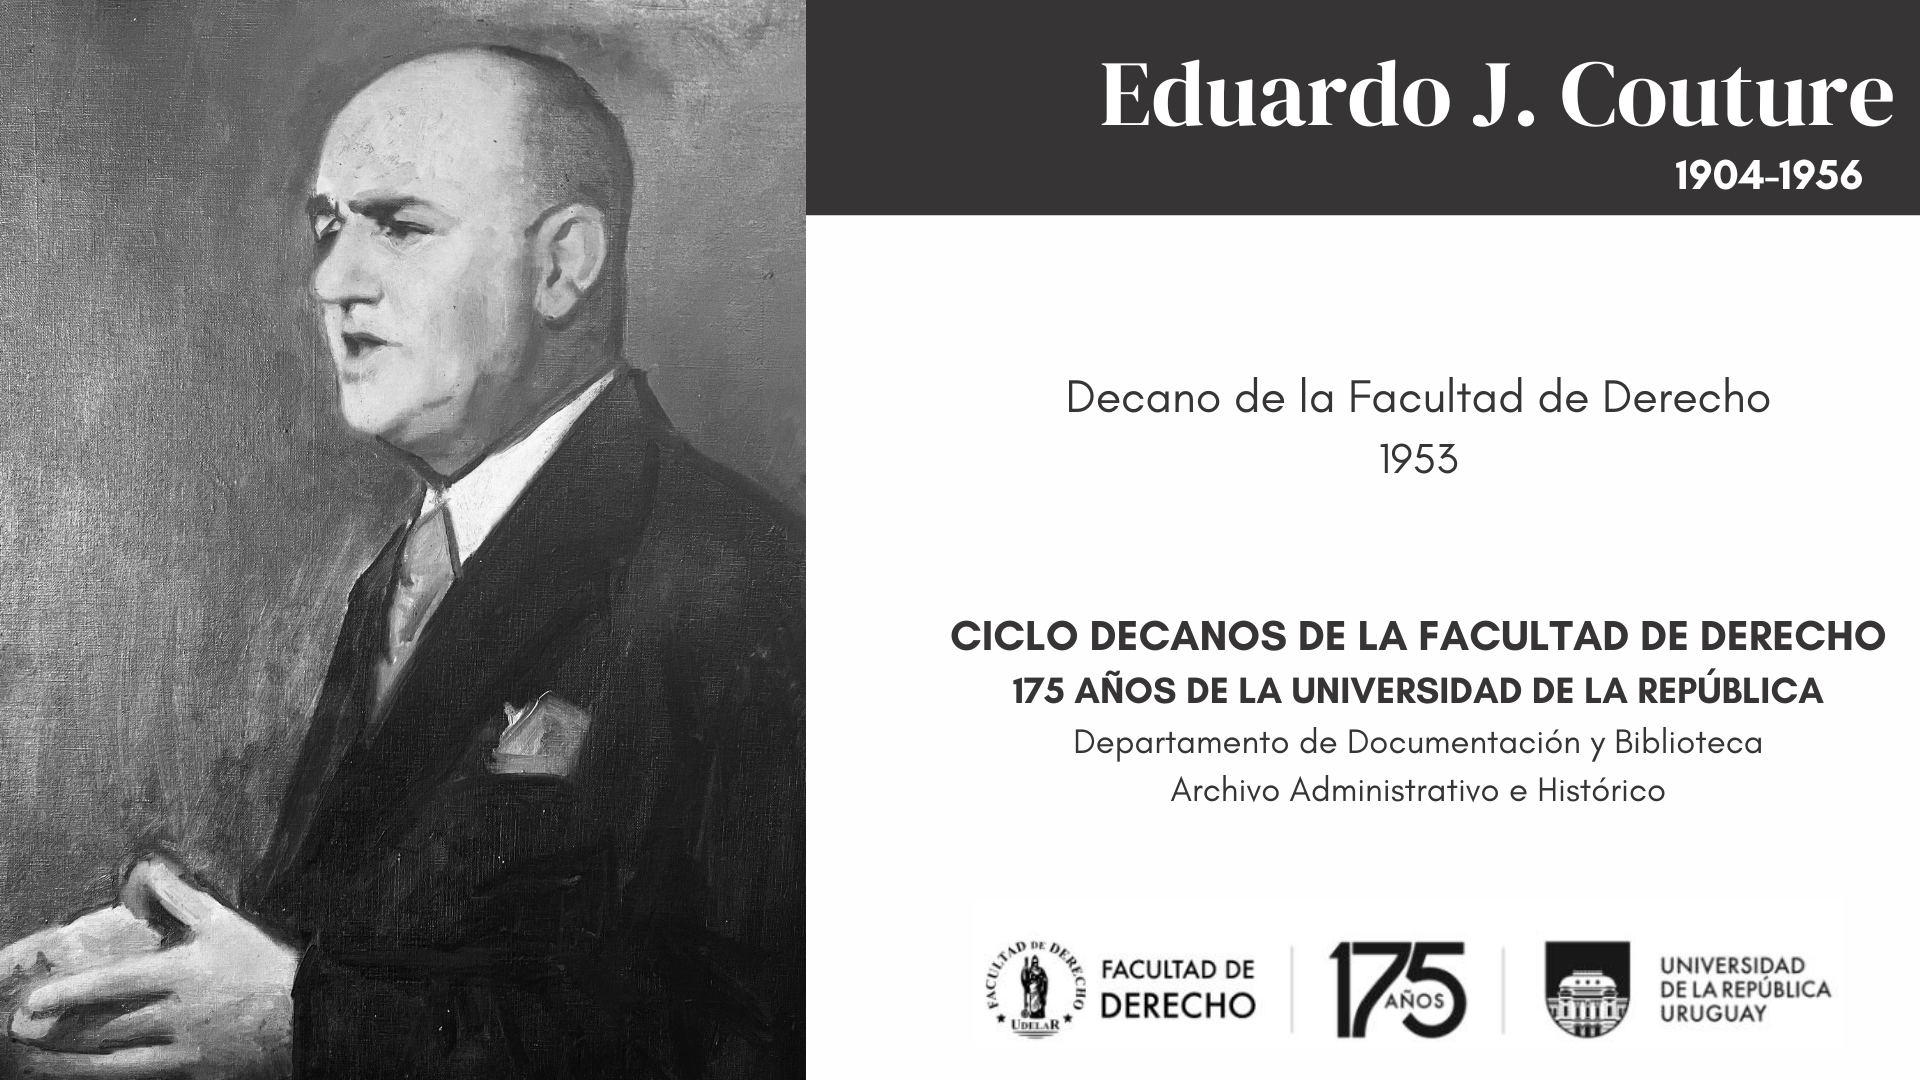 CICLO DECANOS - EDUARDO J. COUTURE